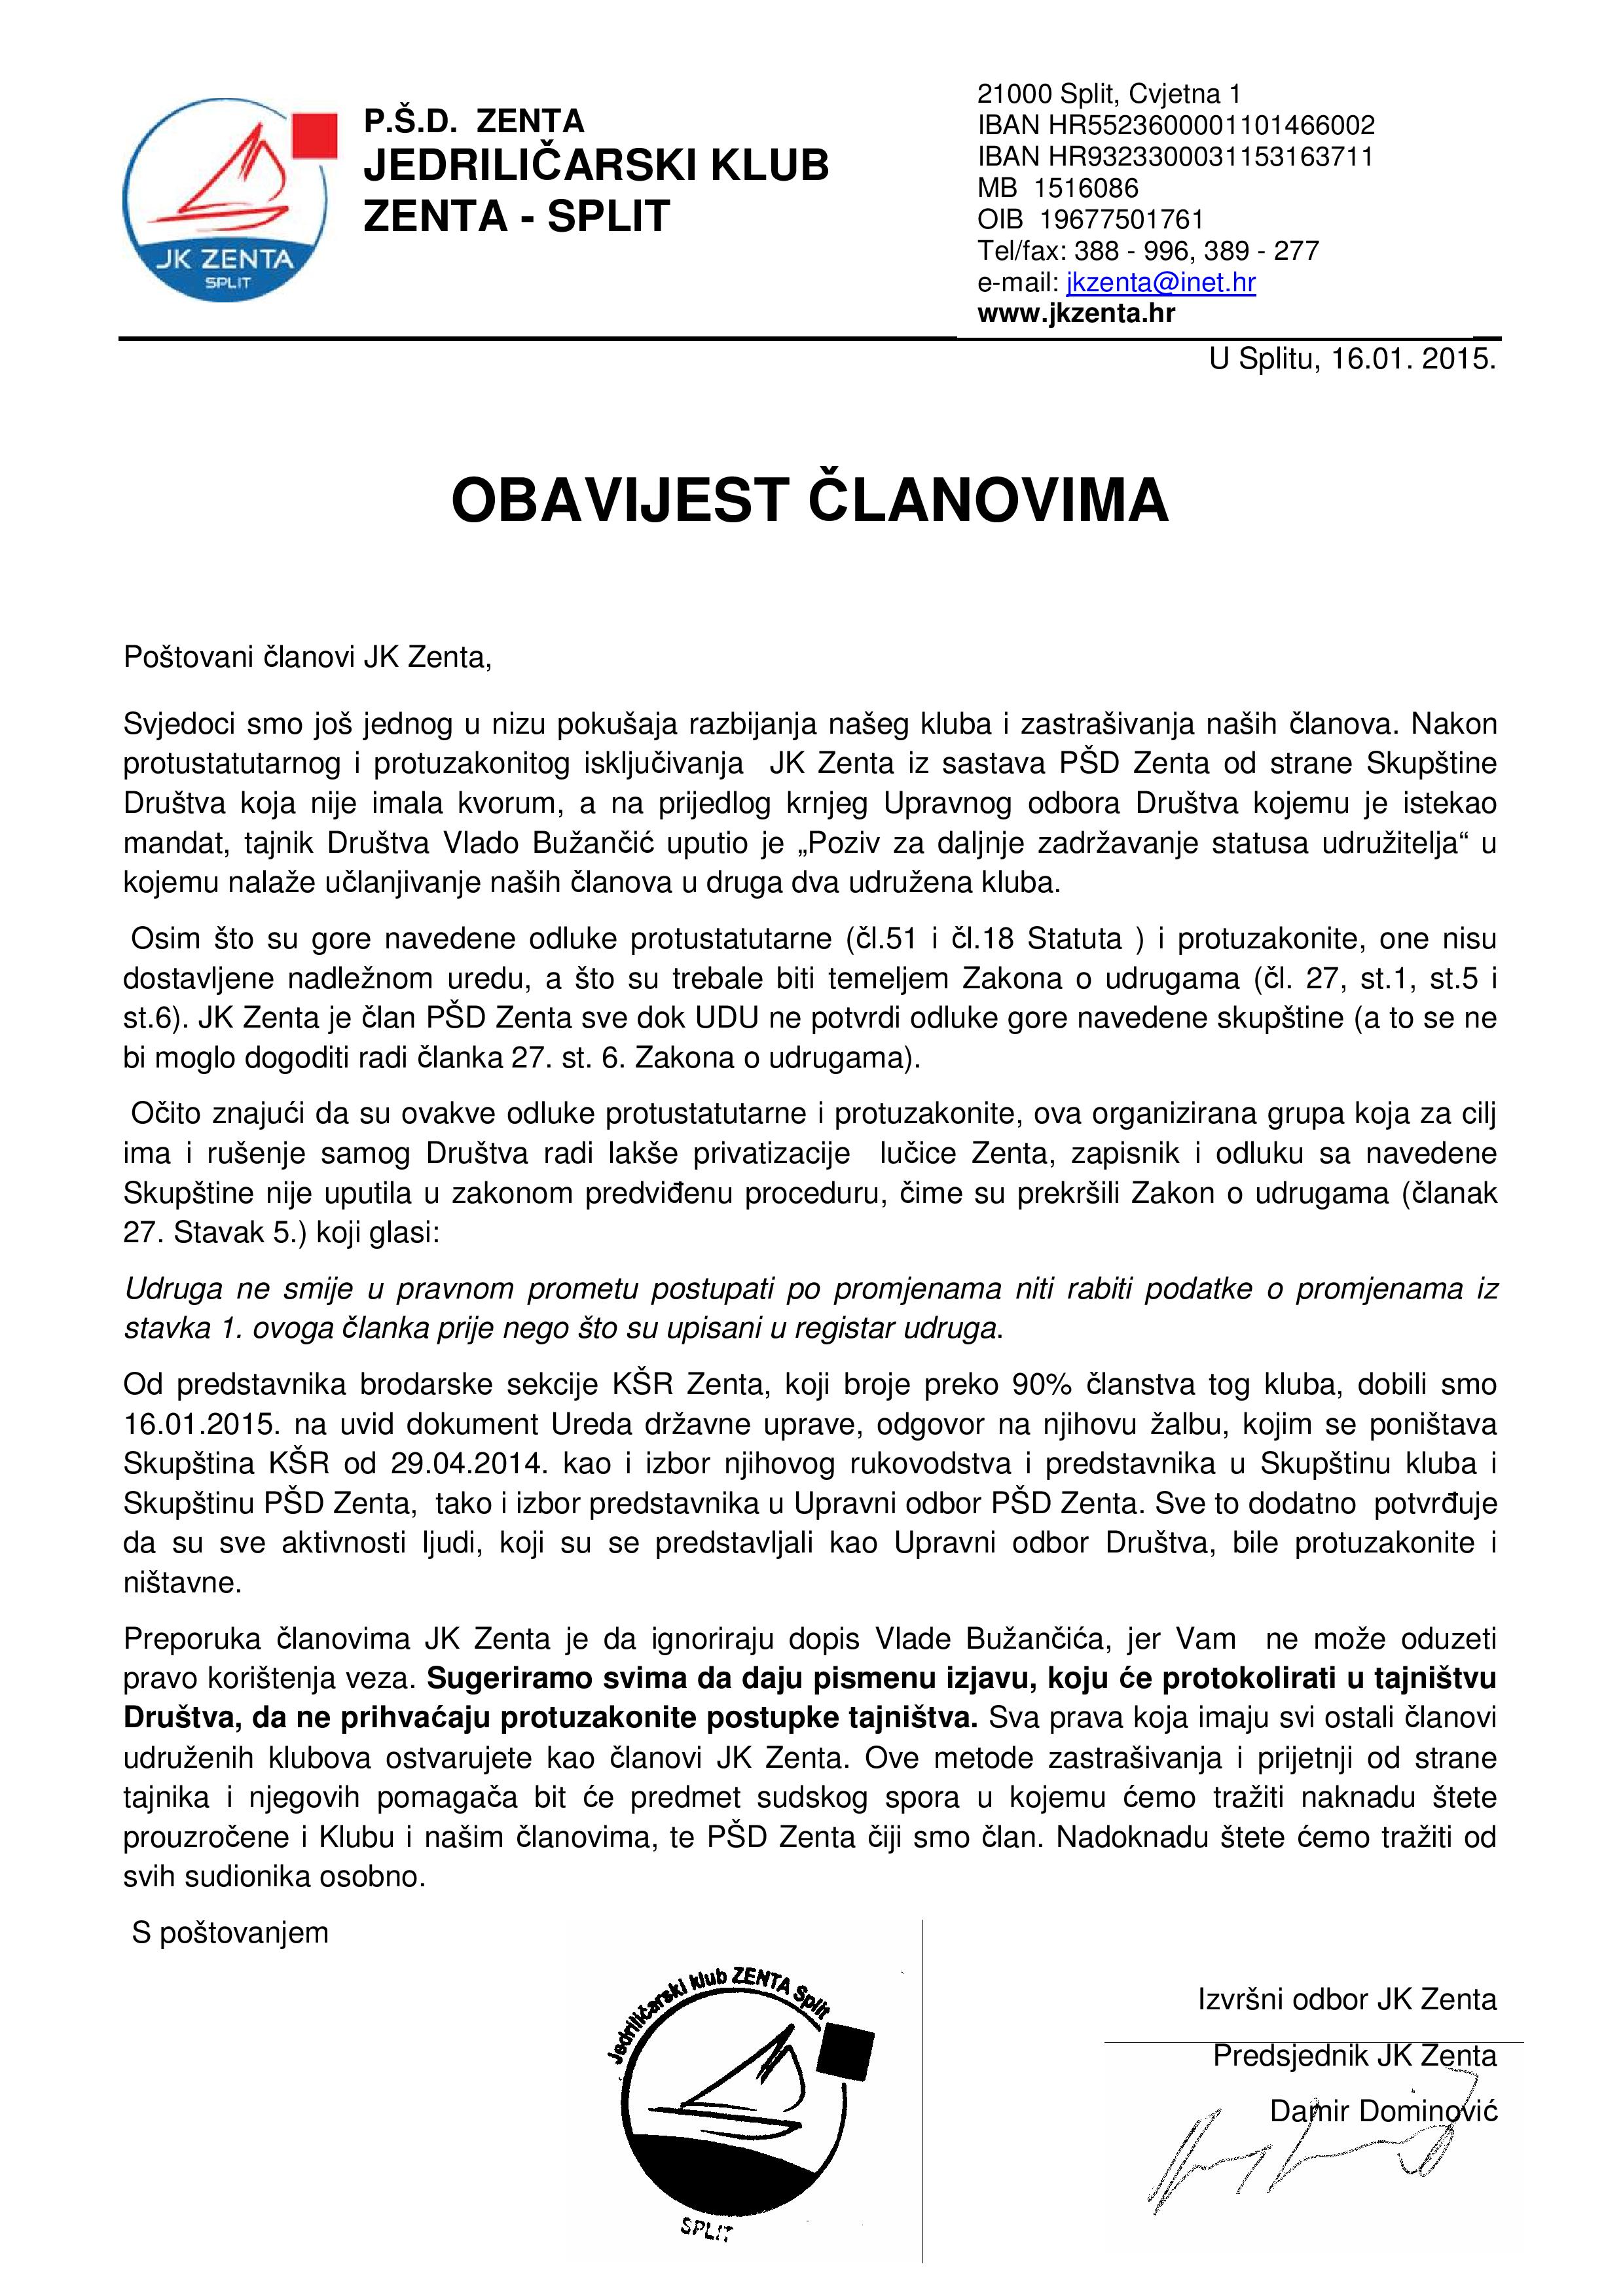 PISMO ČLANOVIMA JK ZENTA-page-001